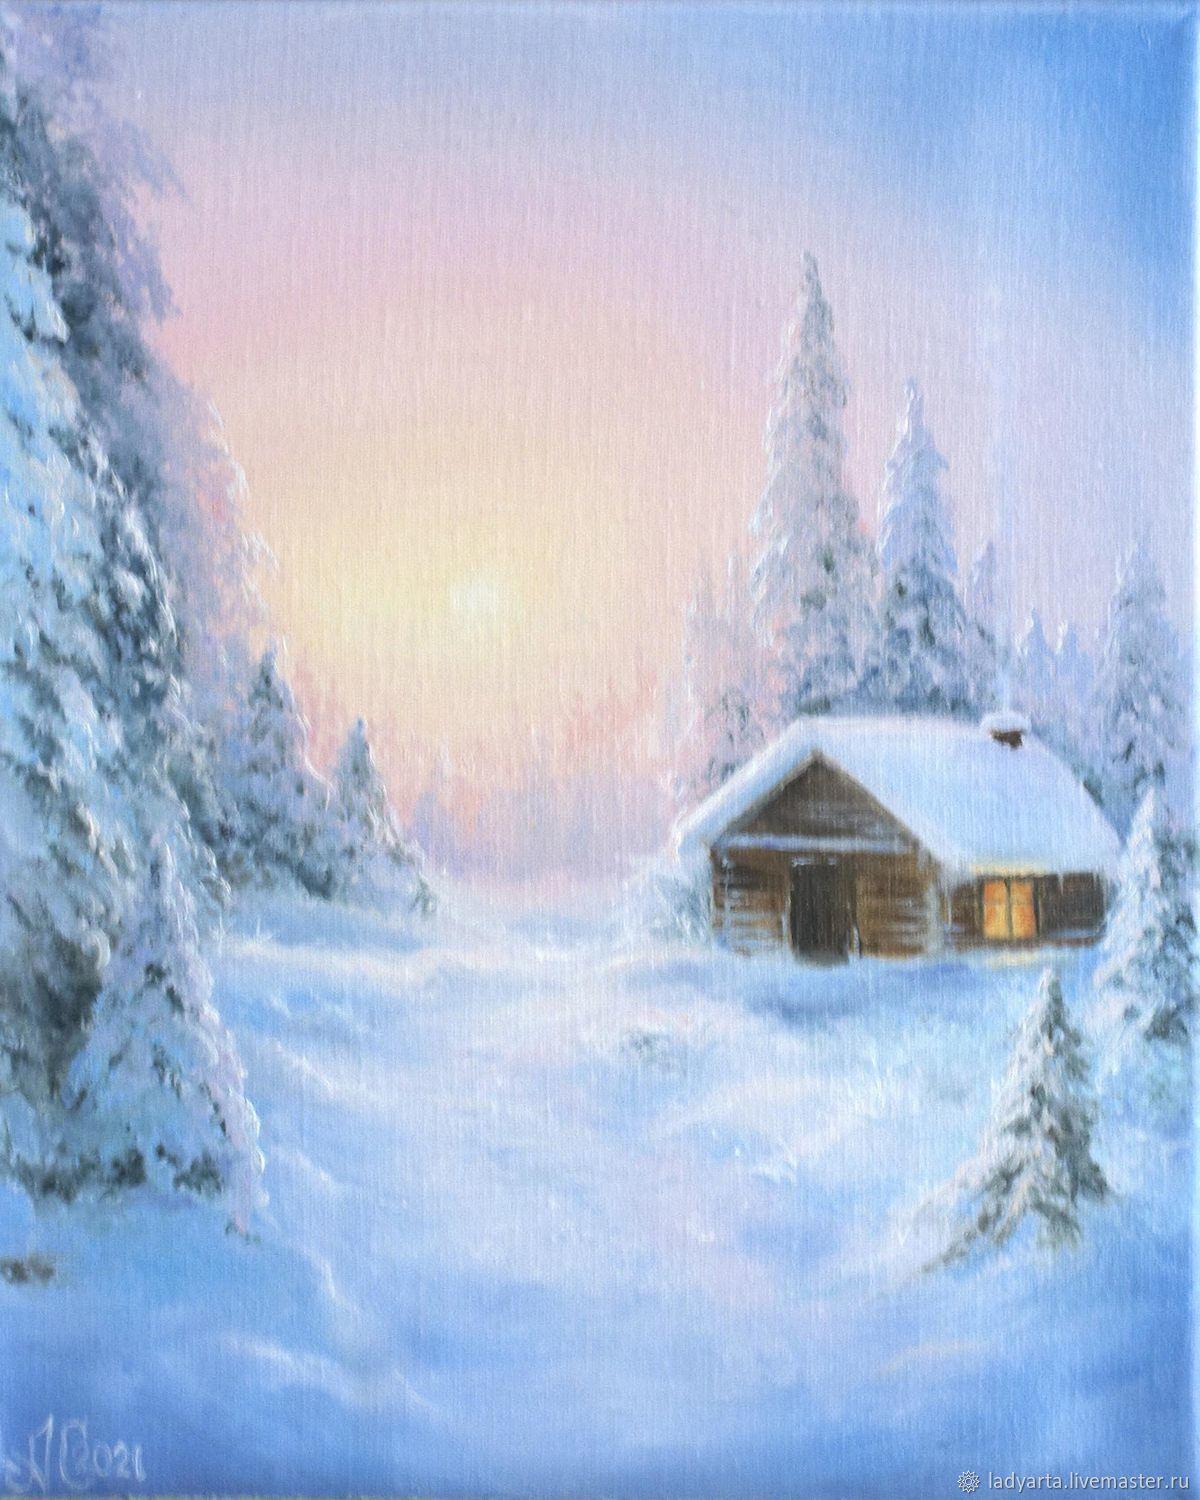 Купить картину Зимняя сказка в Москве от художника Конин Анатолий